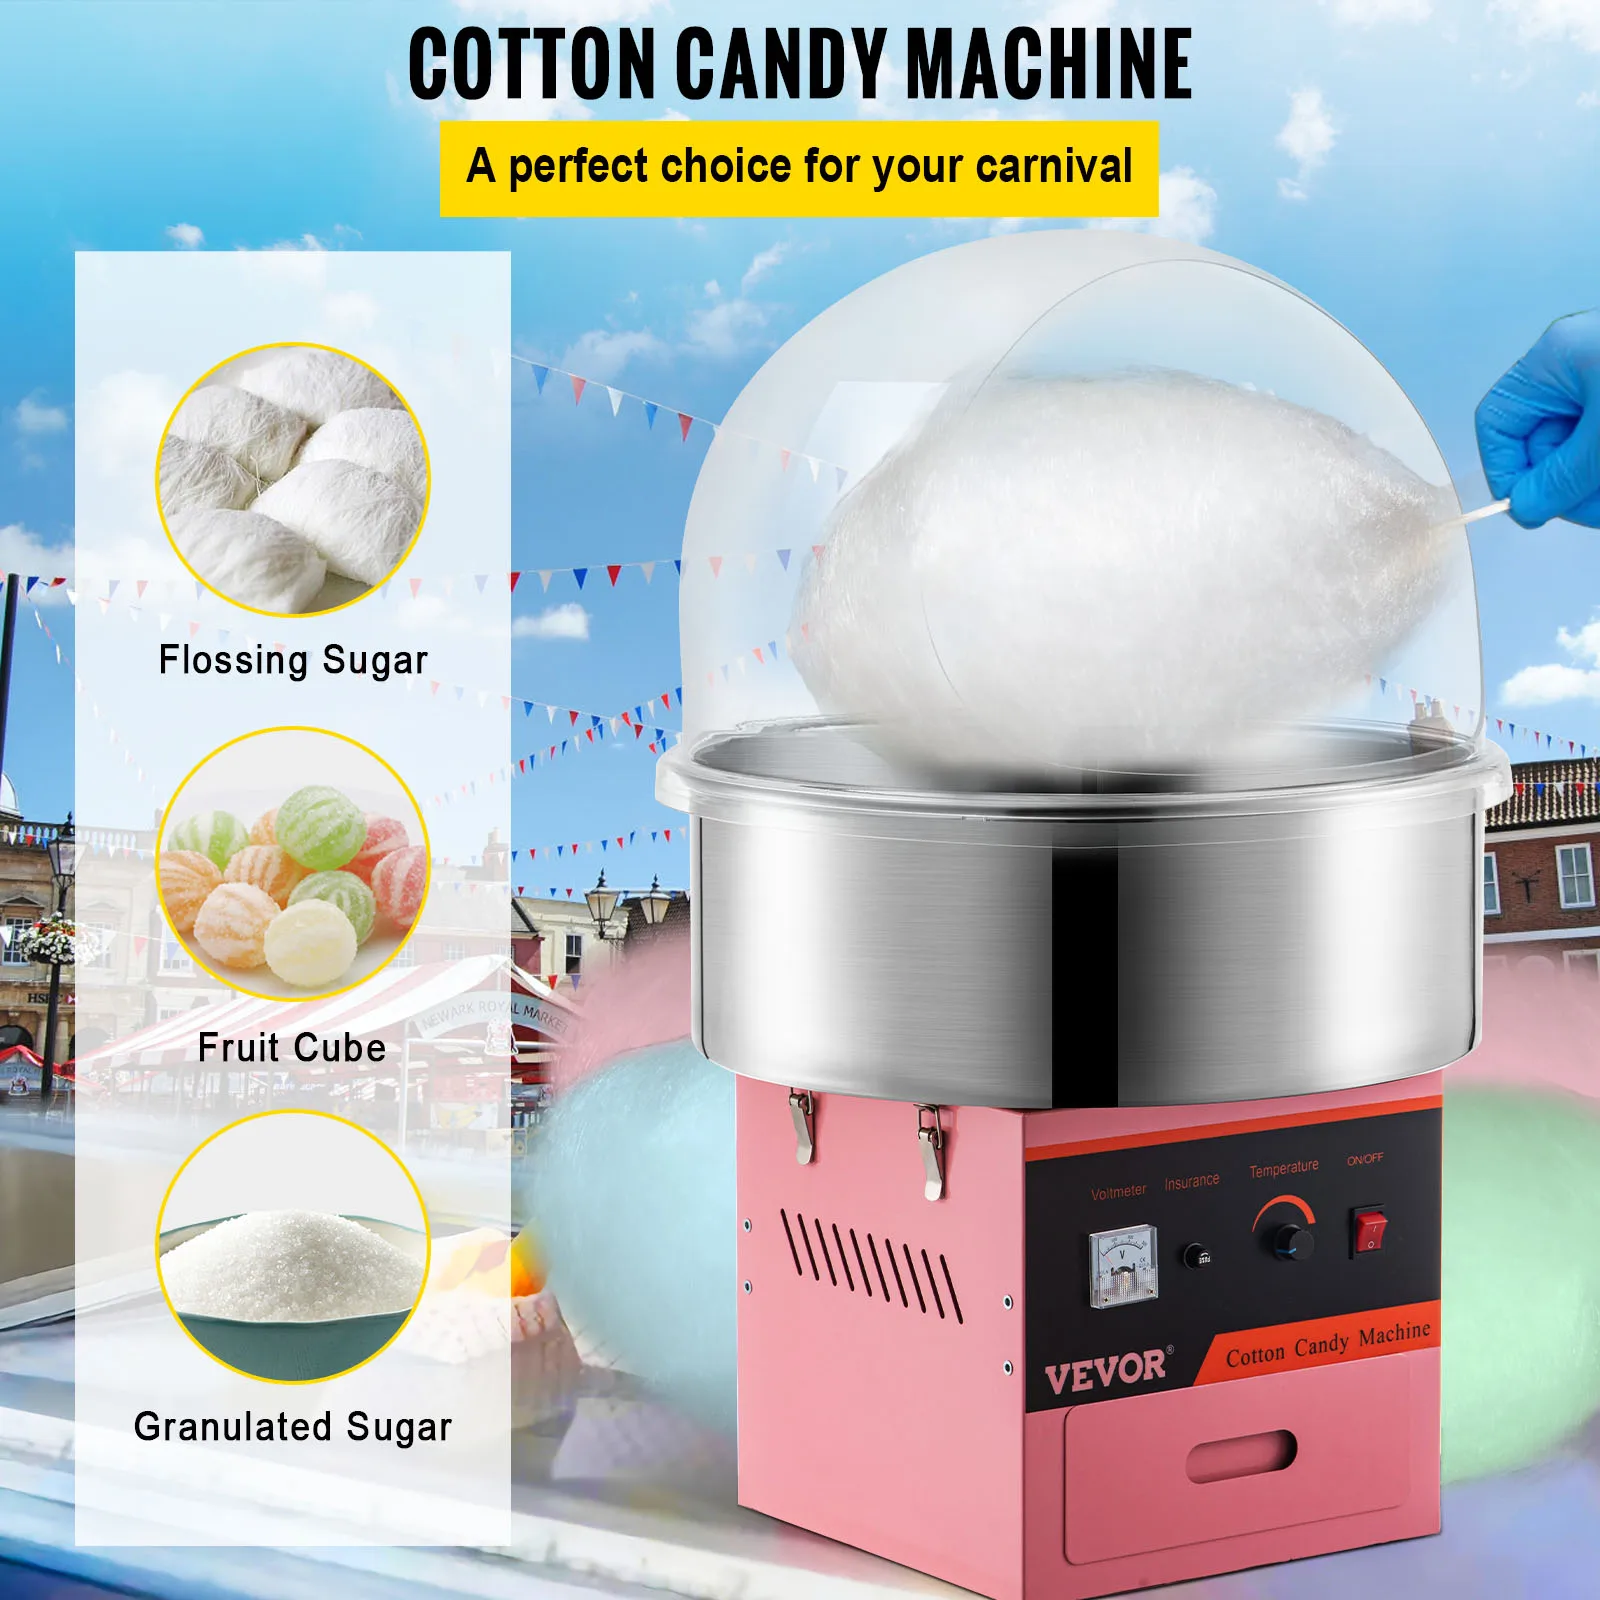 

VEVOR электрическая машина для производства хлопковых конфет, коммерческая машина для производства сахарной конфеты, регулятор температуры для фотографий, фестиваля, карнавала, дома, «сделай сам»